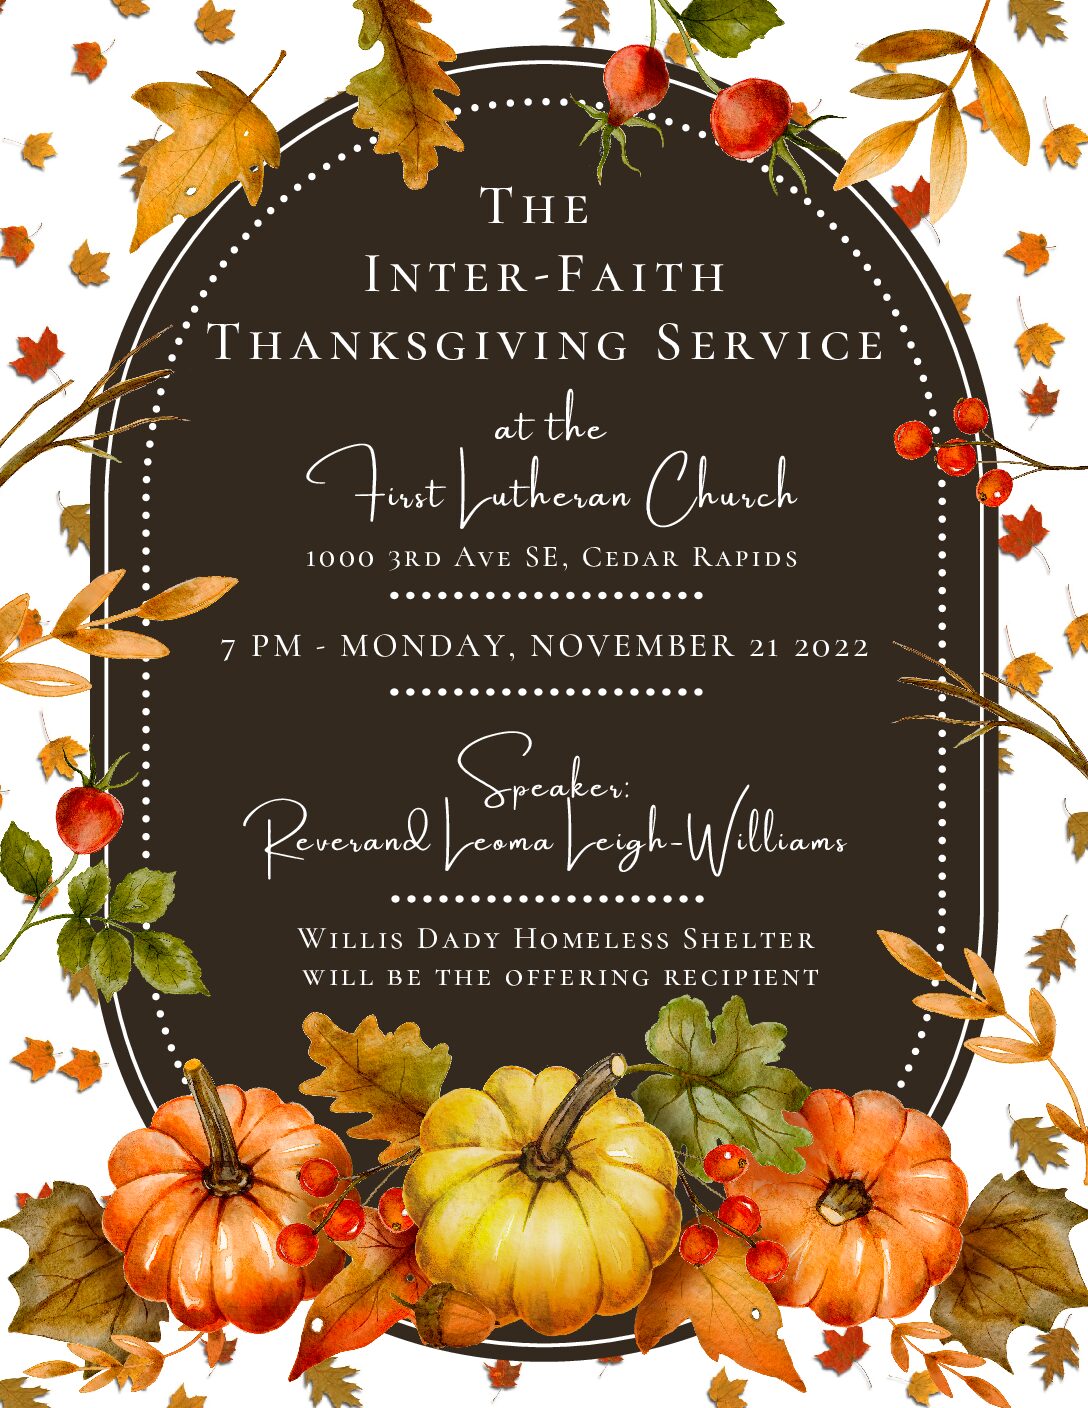 Inter-Faith Thanksgiving Service